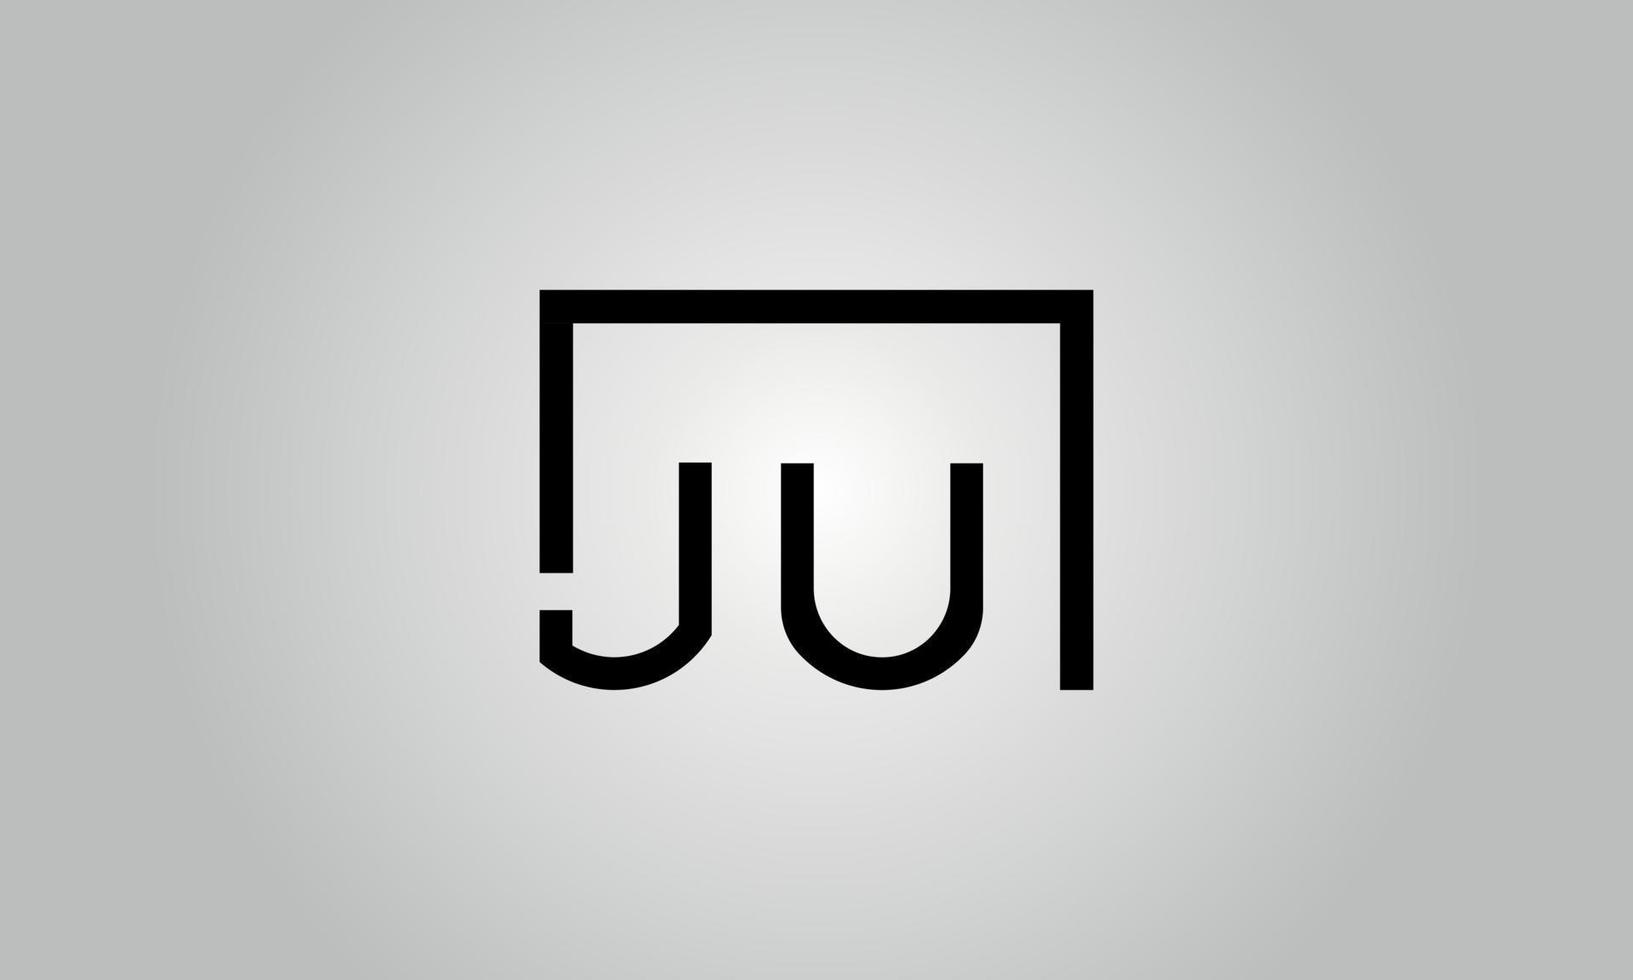 design de logotipo carta ju. ju logotipo com forma quadrada no modelo de vetor livre de vetor de cores pretas.